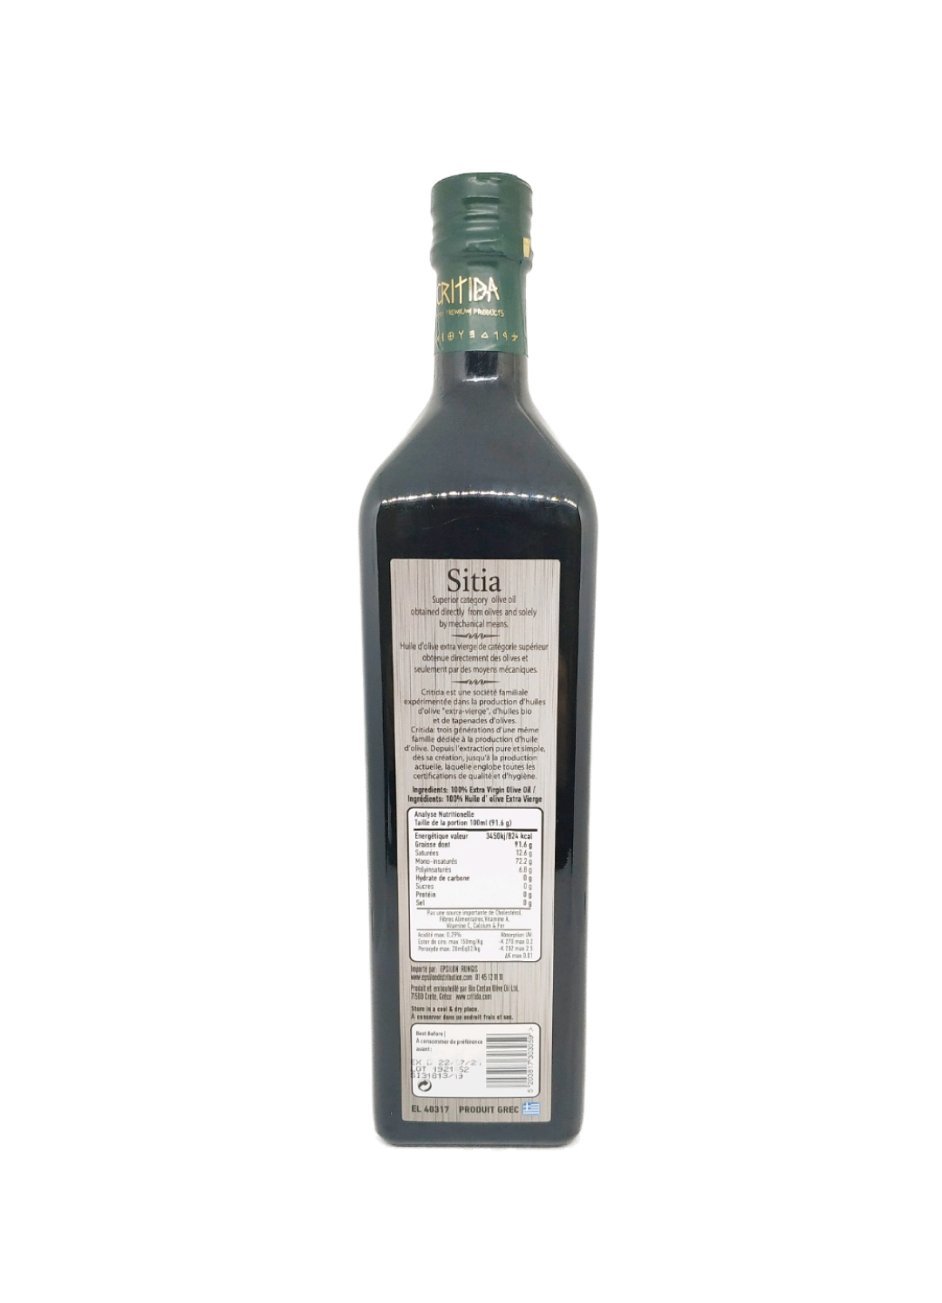 Produits orientaux en ligne: Sitia - Huile d'olive extra vierge 0.2